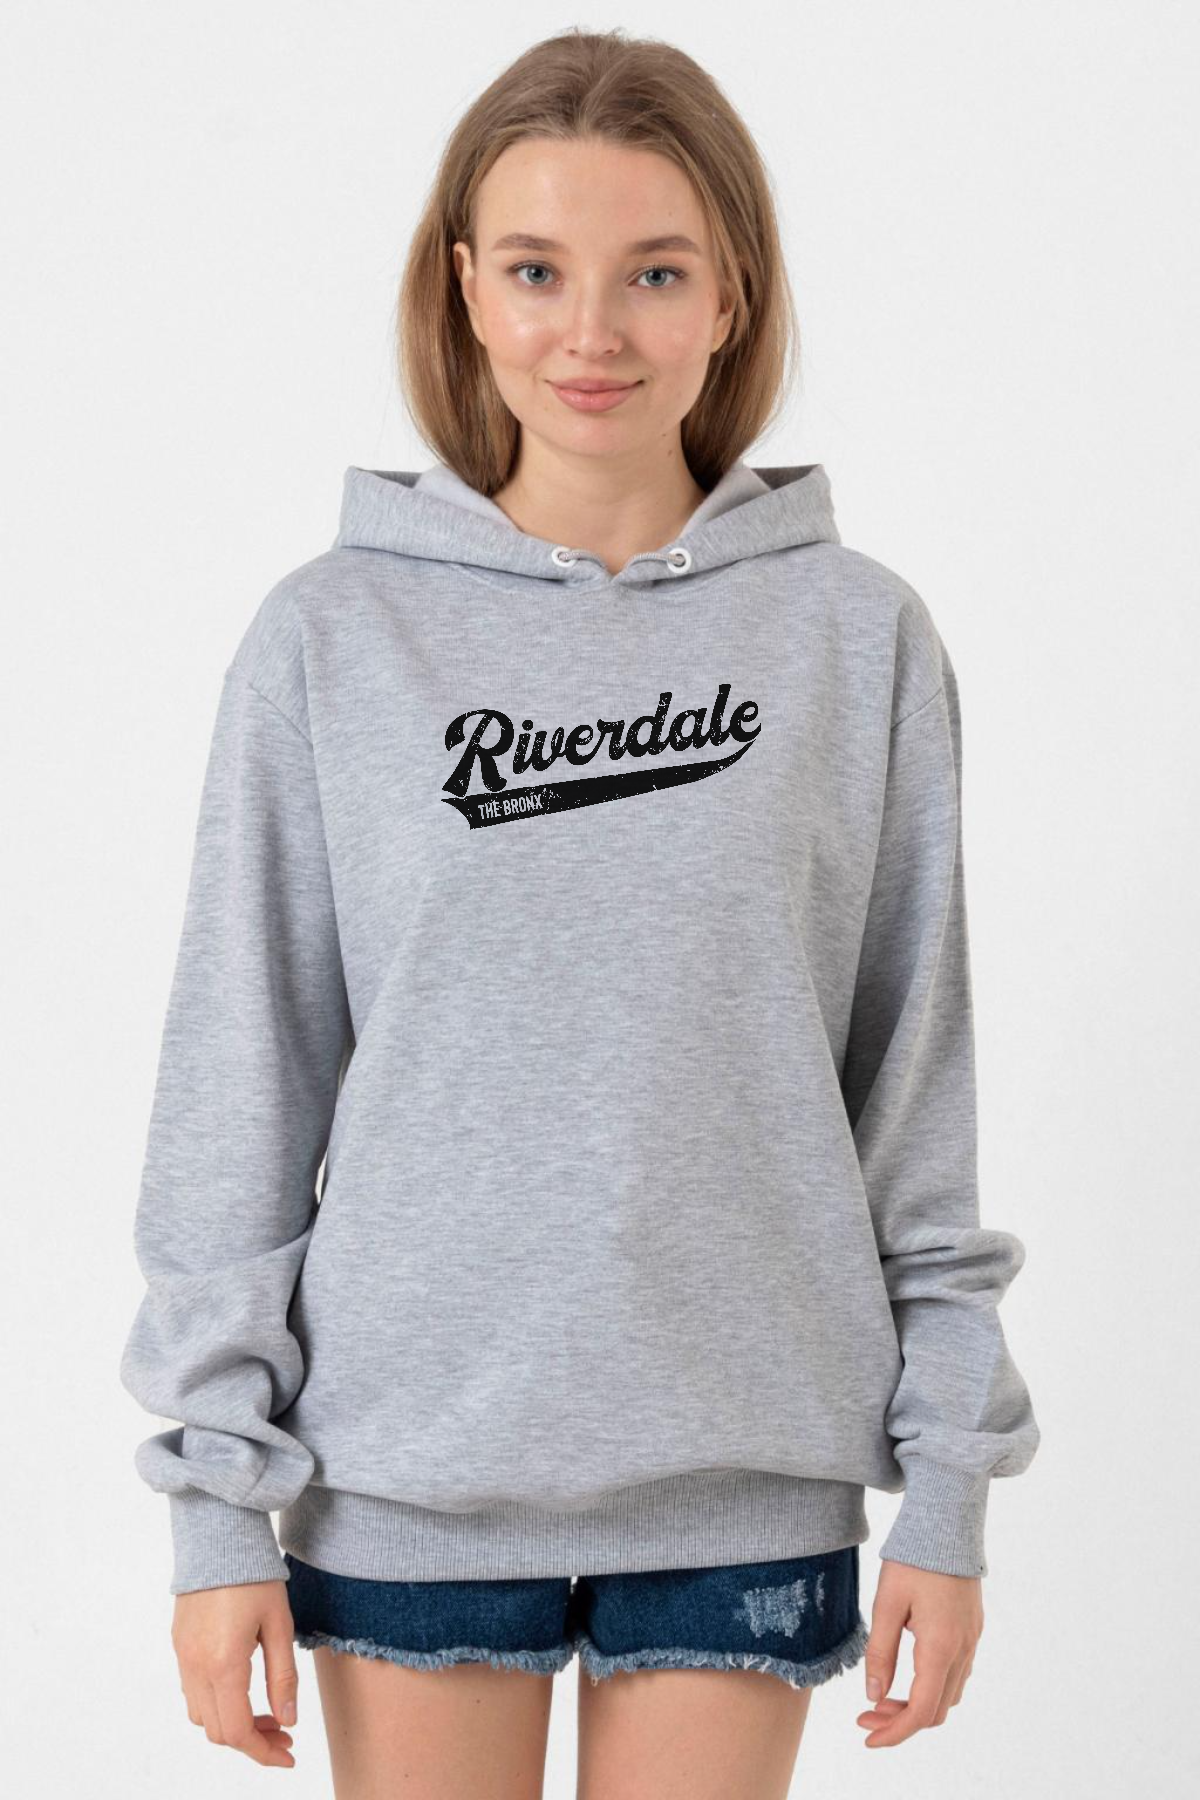 Riverdale Bronx New York City Grimelanj Kadın 3ip Kapşonlu Sweatshirt